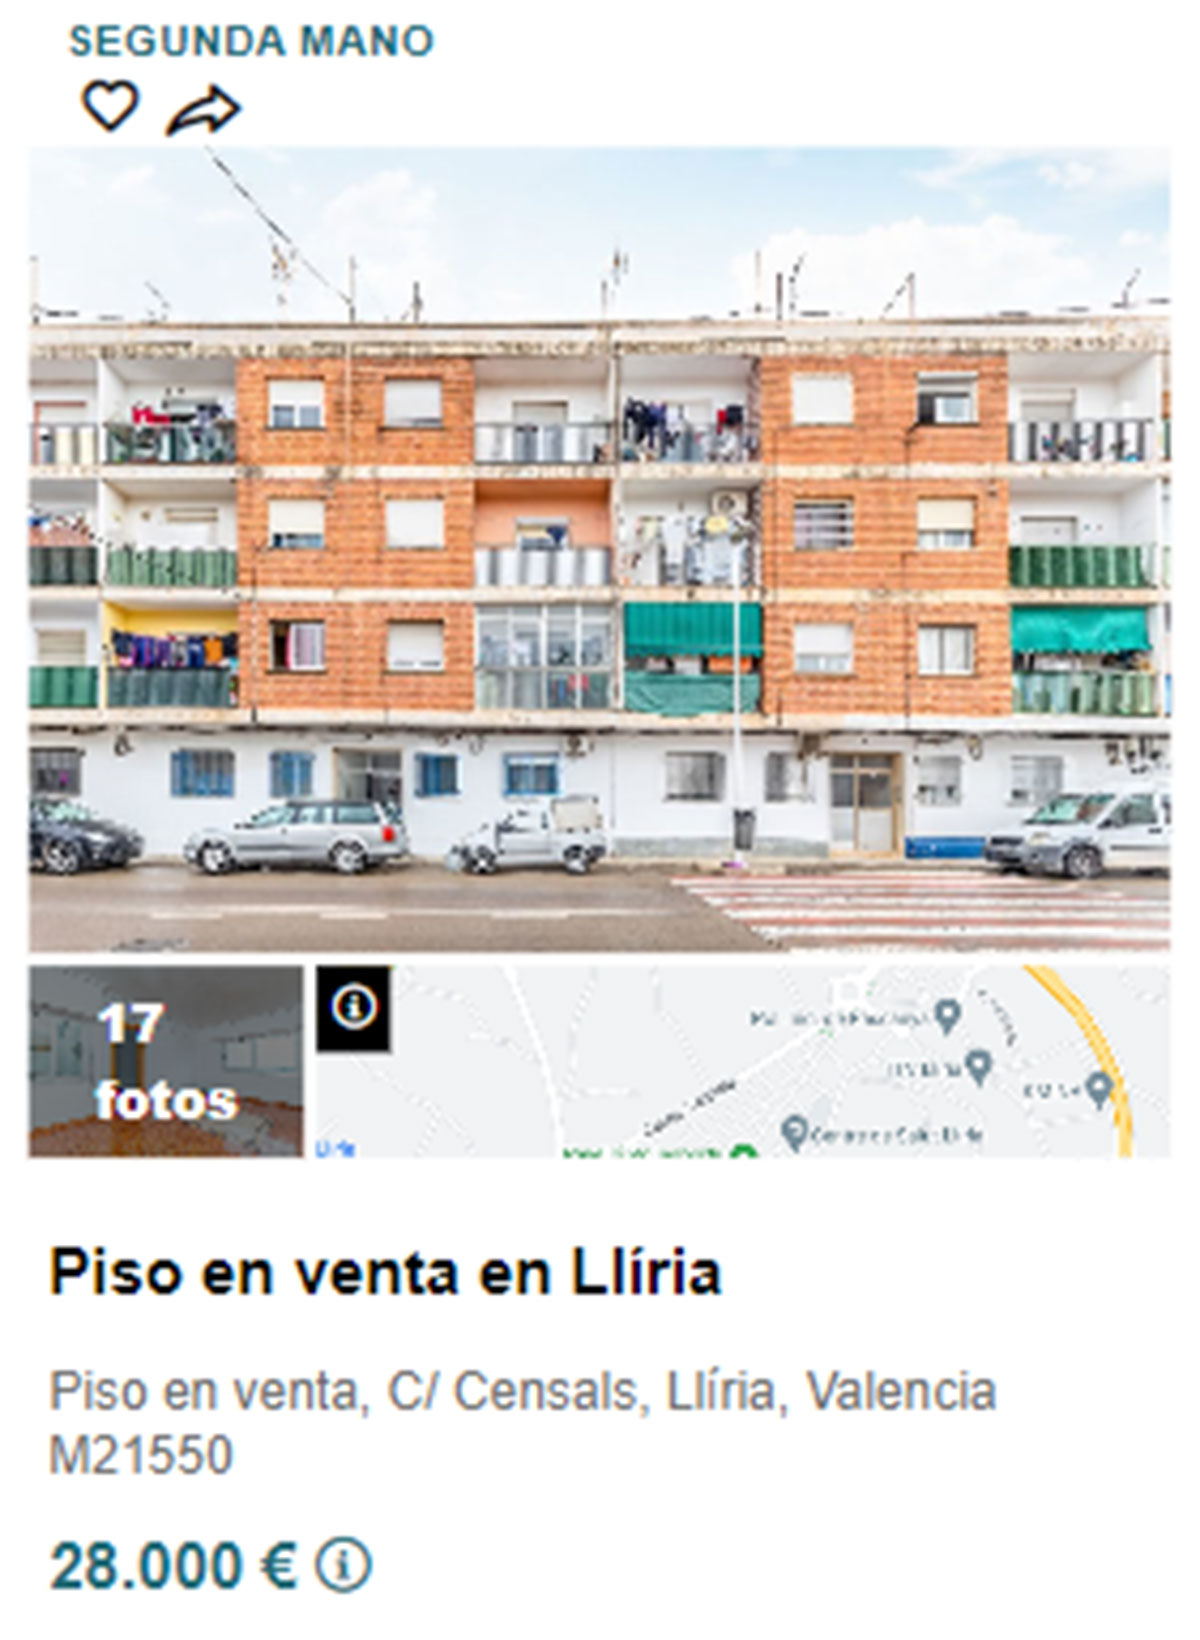 Piso en pueblos de Valencia por 28.000 euros